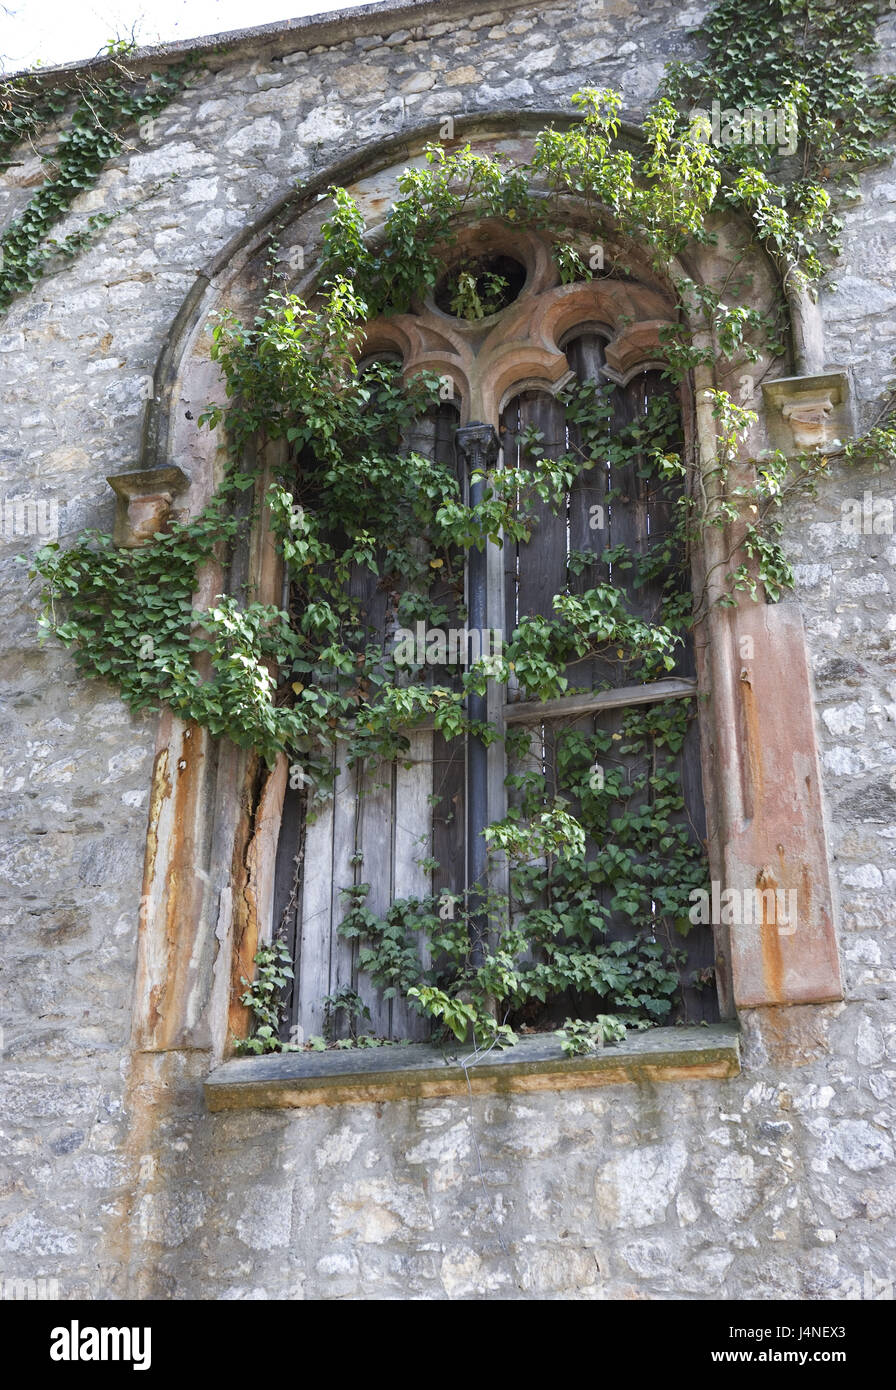 Austria, Carinzia, wolf mountain, bloccare, finestra, pianta rampicante, dettaglio Foto Stock